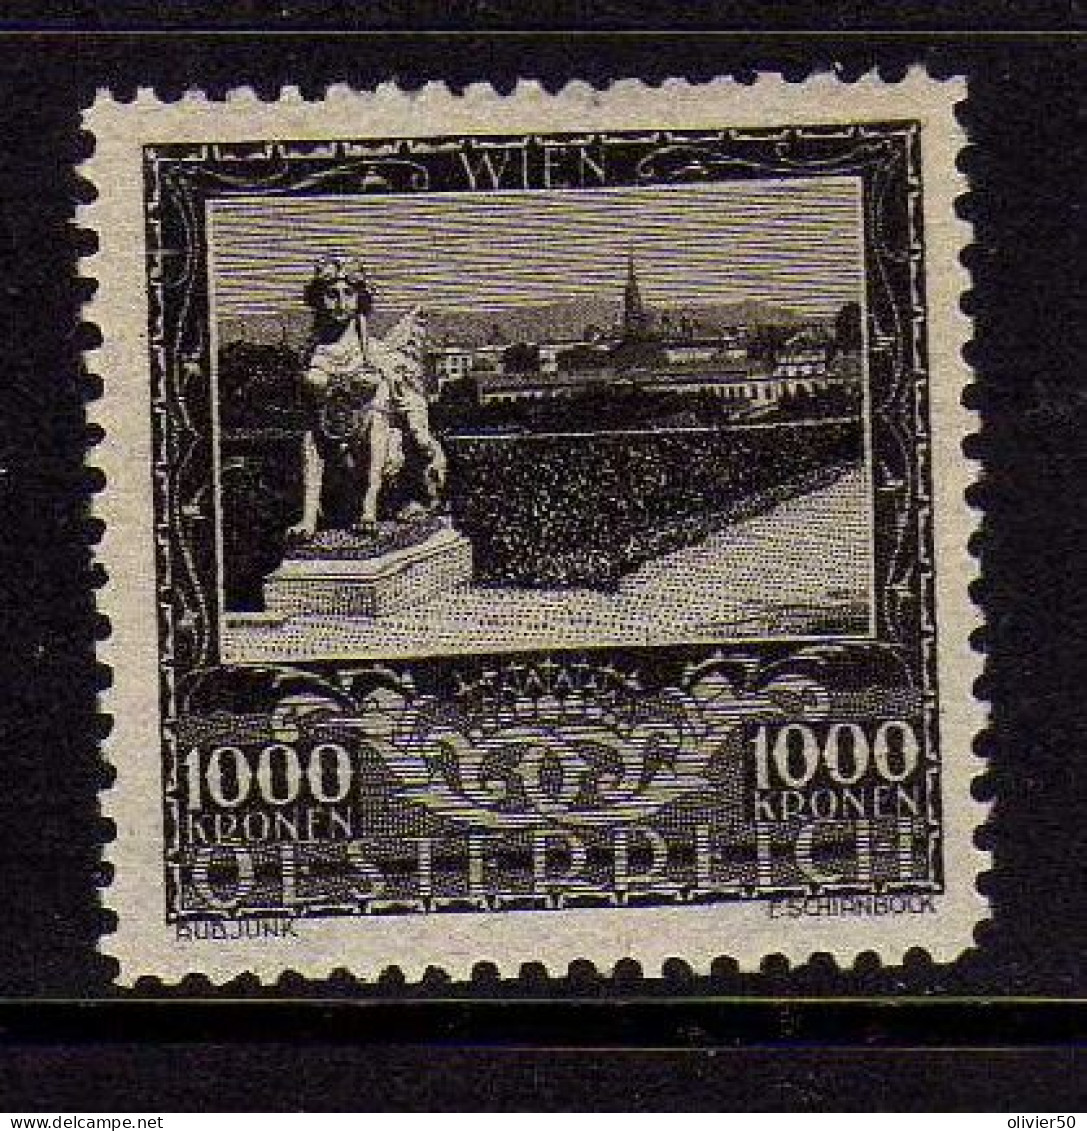 Autriche - 1929 - 1000 K. Ville - Vienne - Neuf* - MLH - Ungebraucht